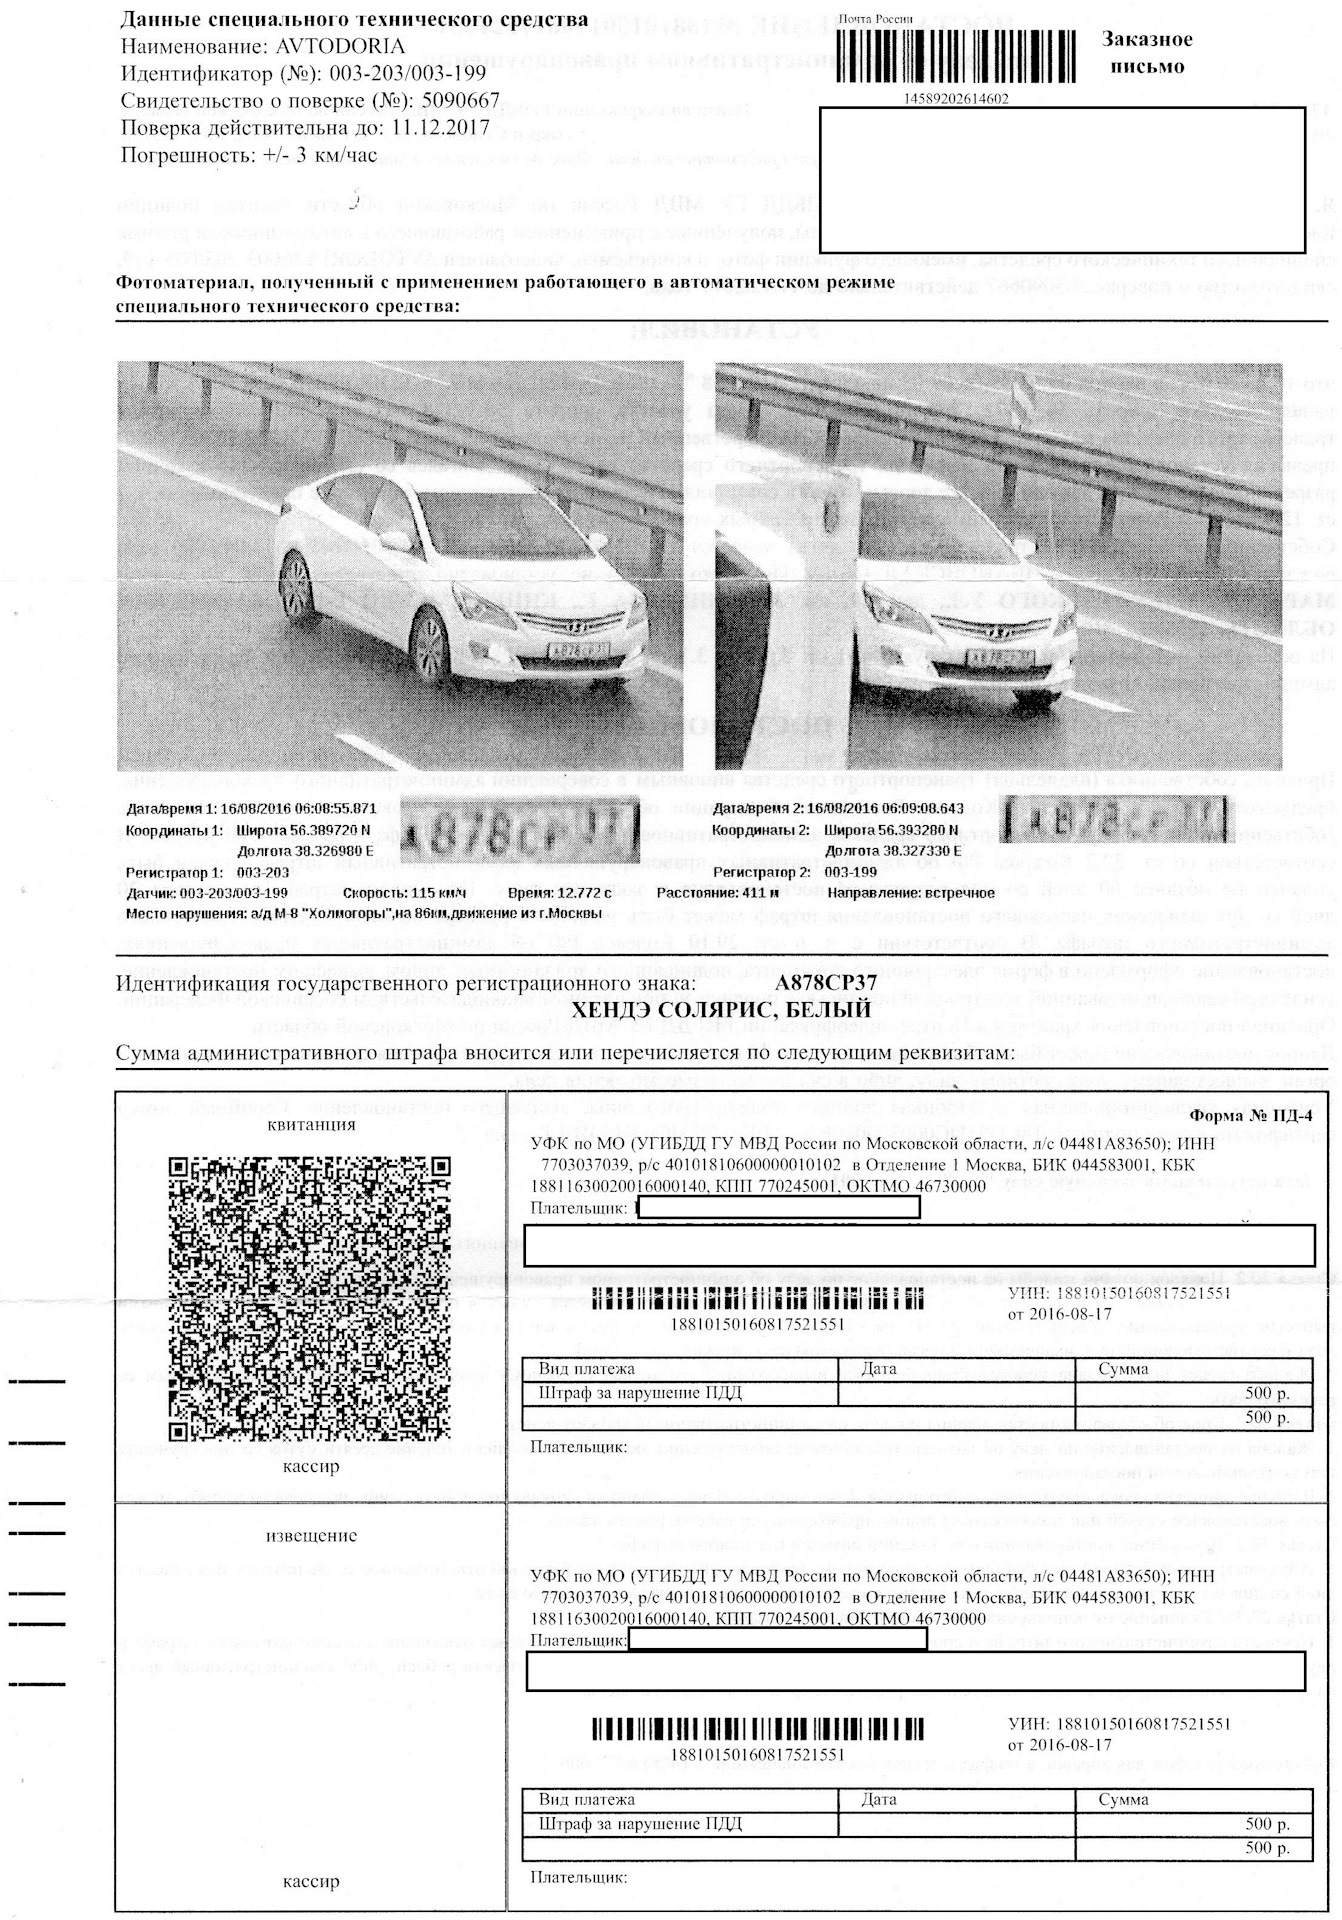 Штрафы гибдд с фотографией нарушения по номеру автомобиля онлайн бесплатно